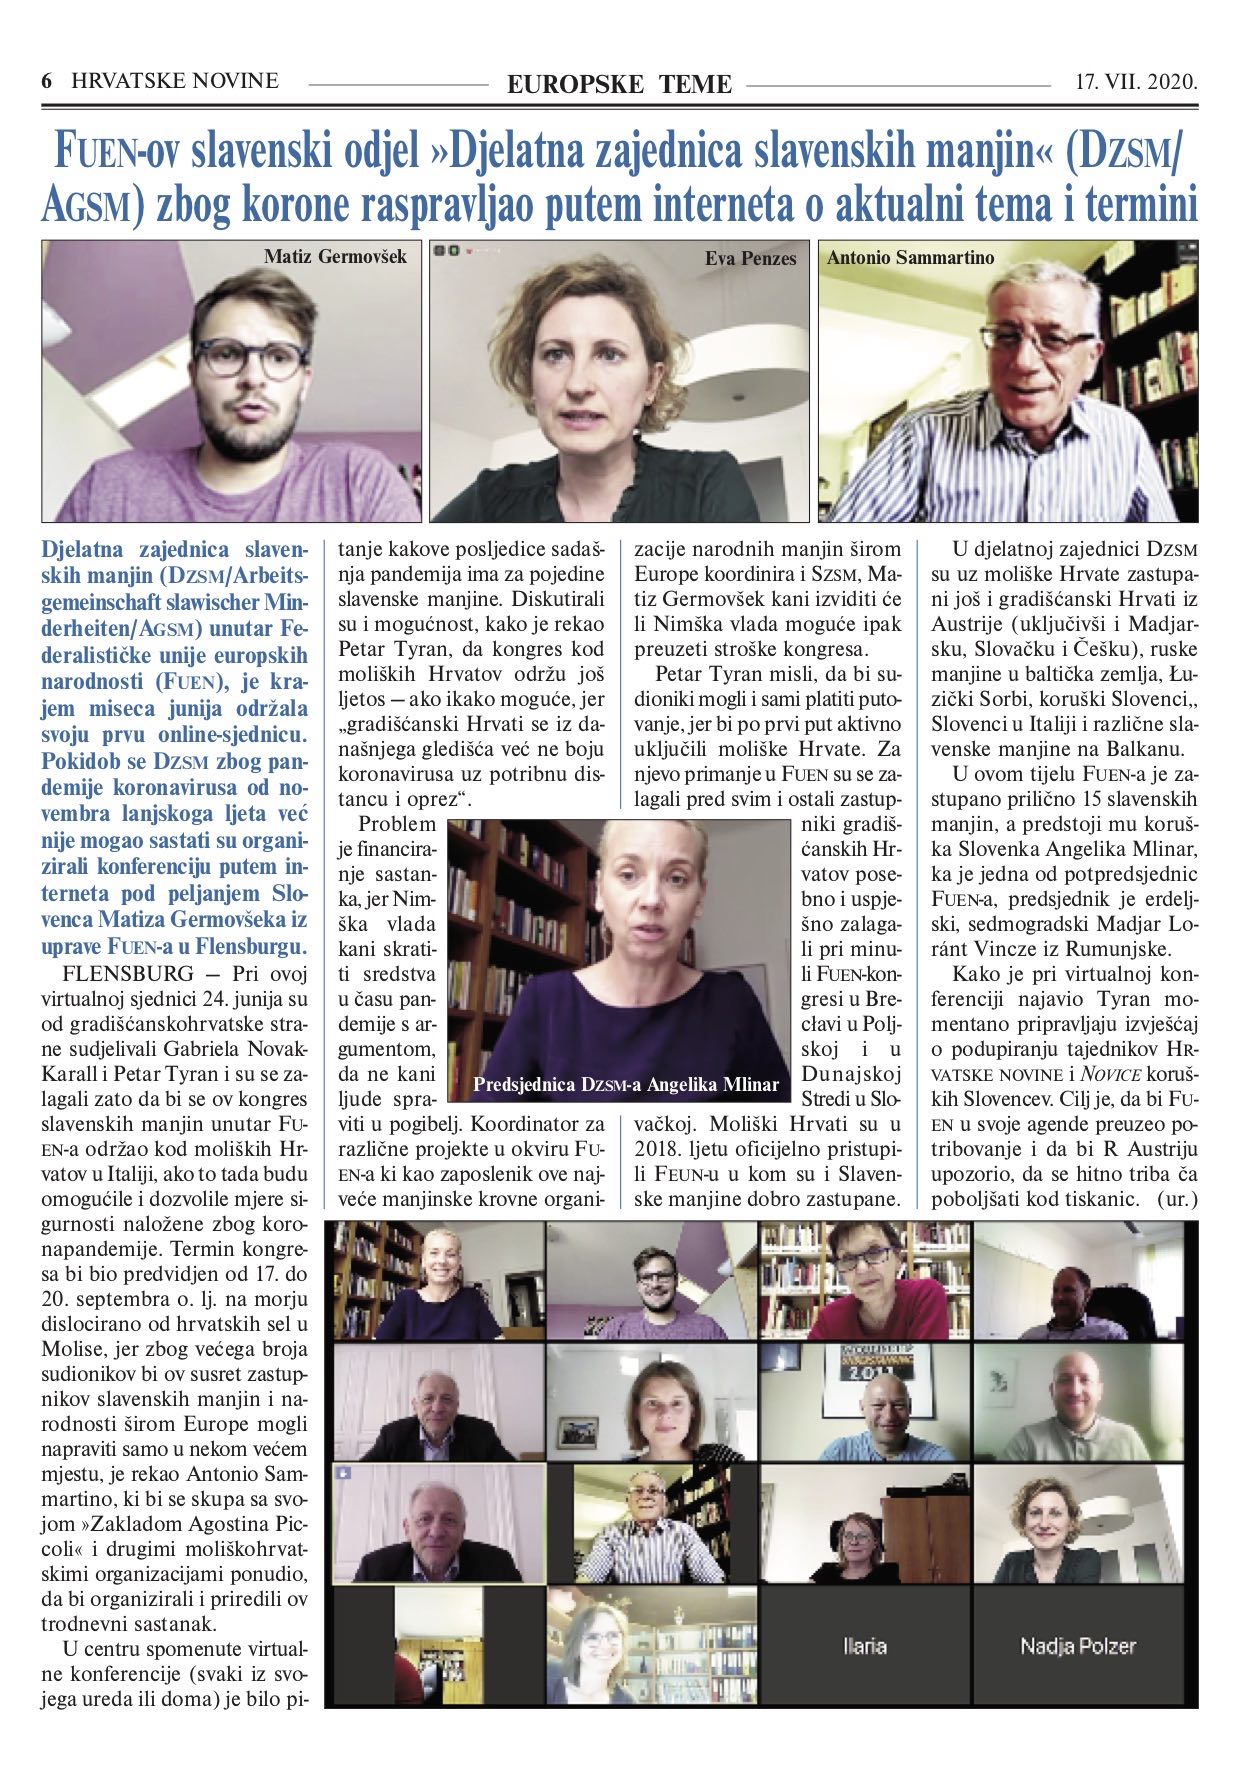 AGSM Online Sitzung in Hrvatske Novine 